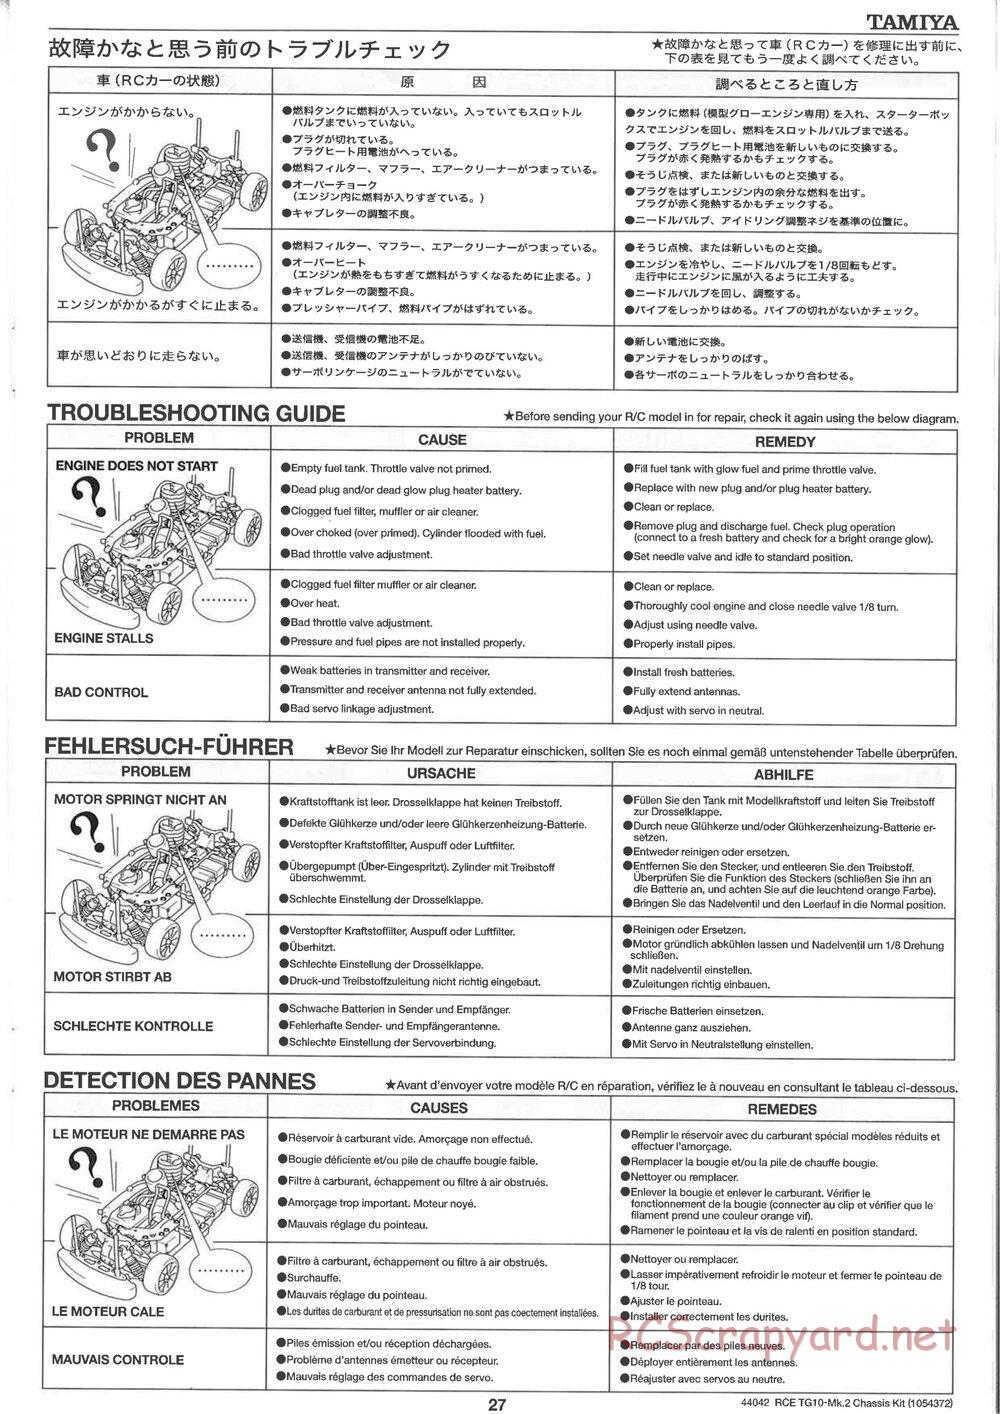 Tamiya - TG10 Mk.2 Chassis - Manual - Page 27